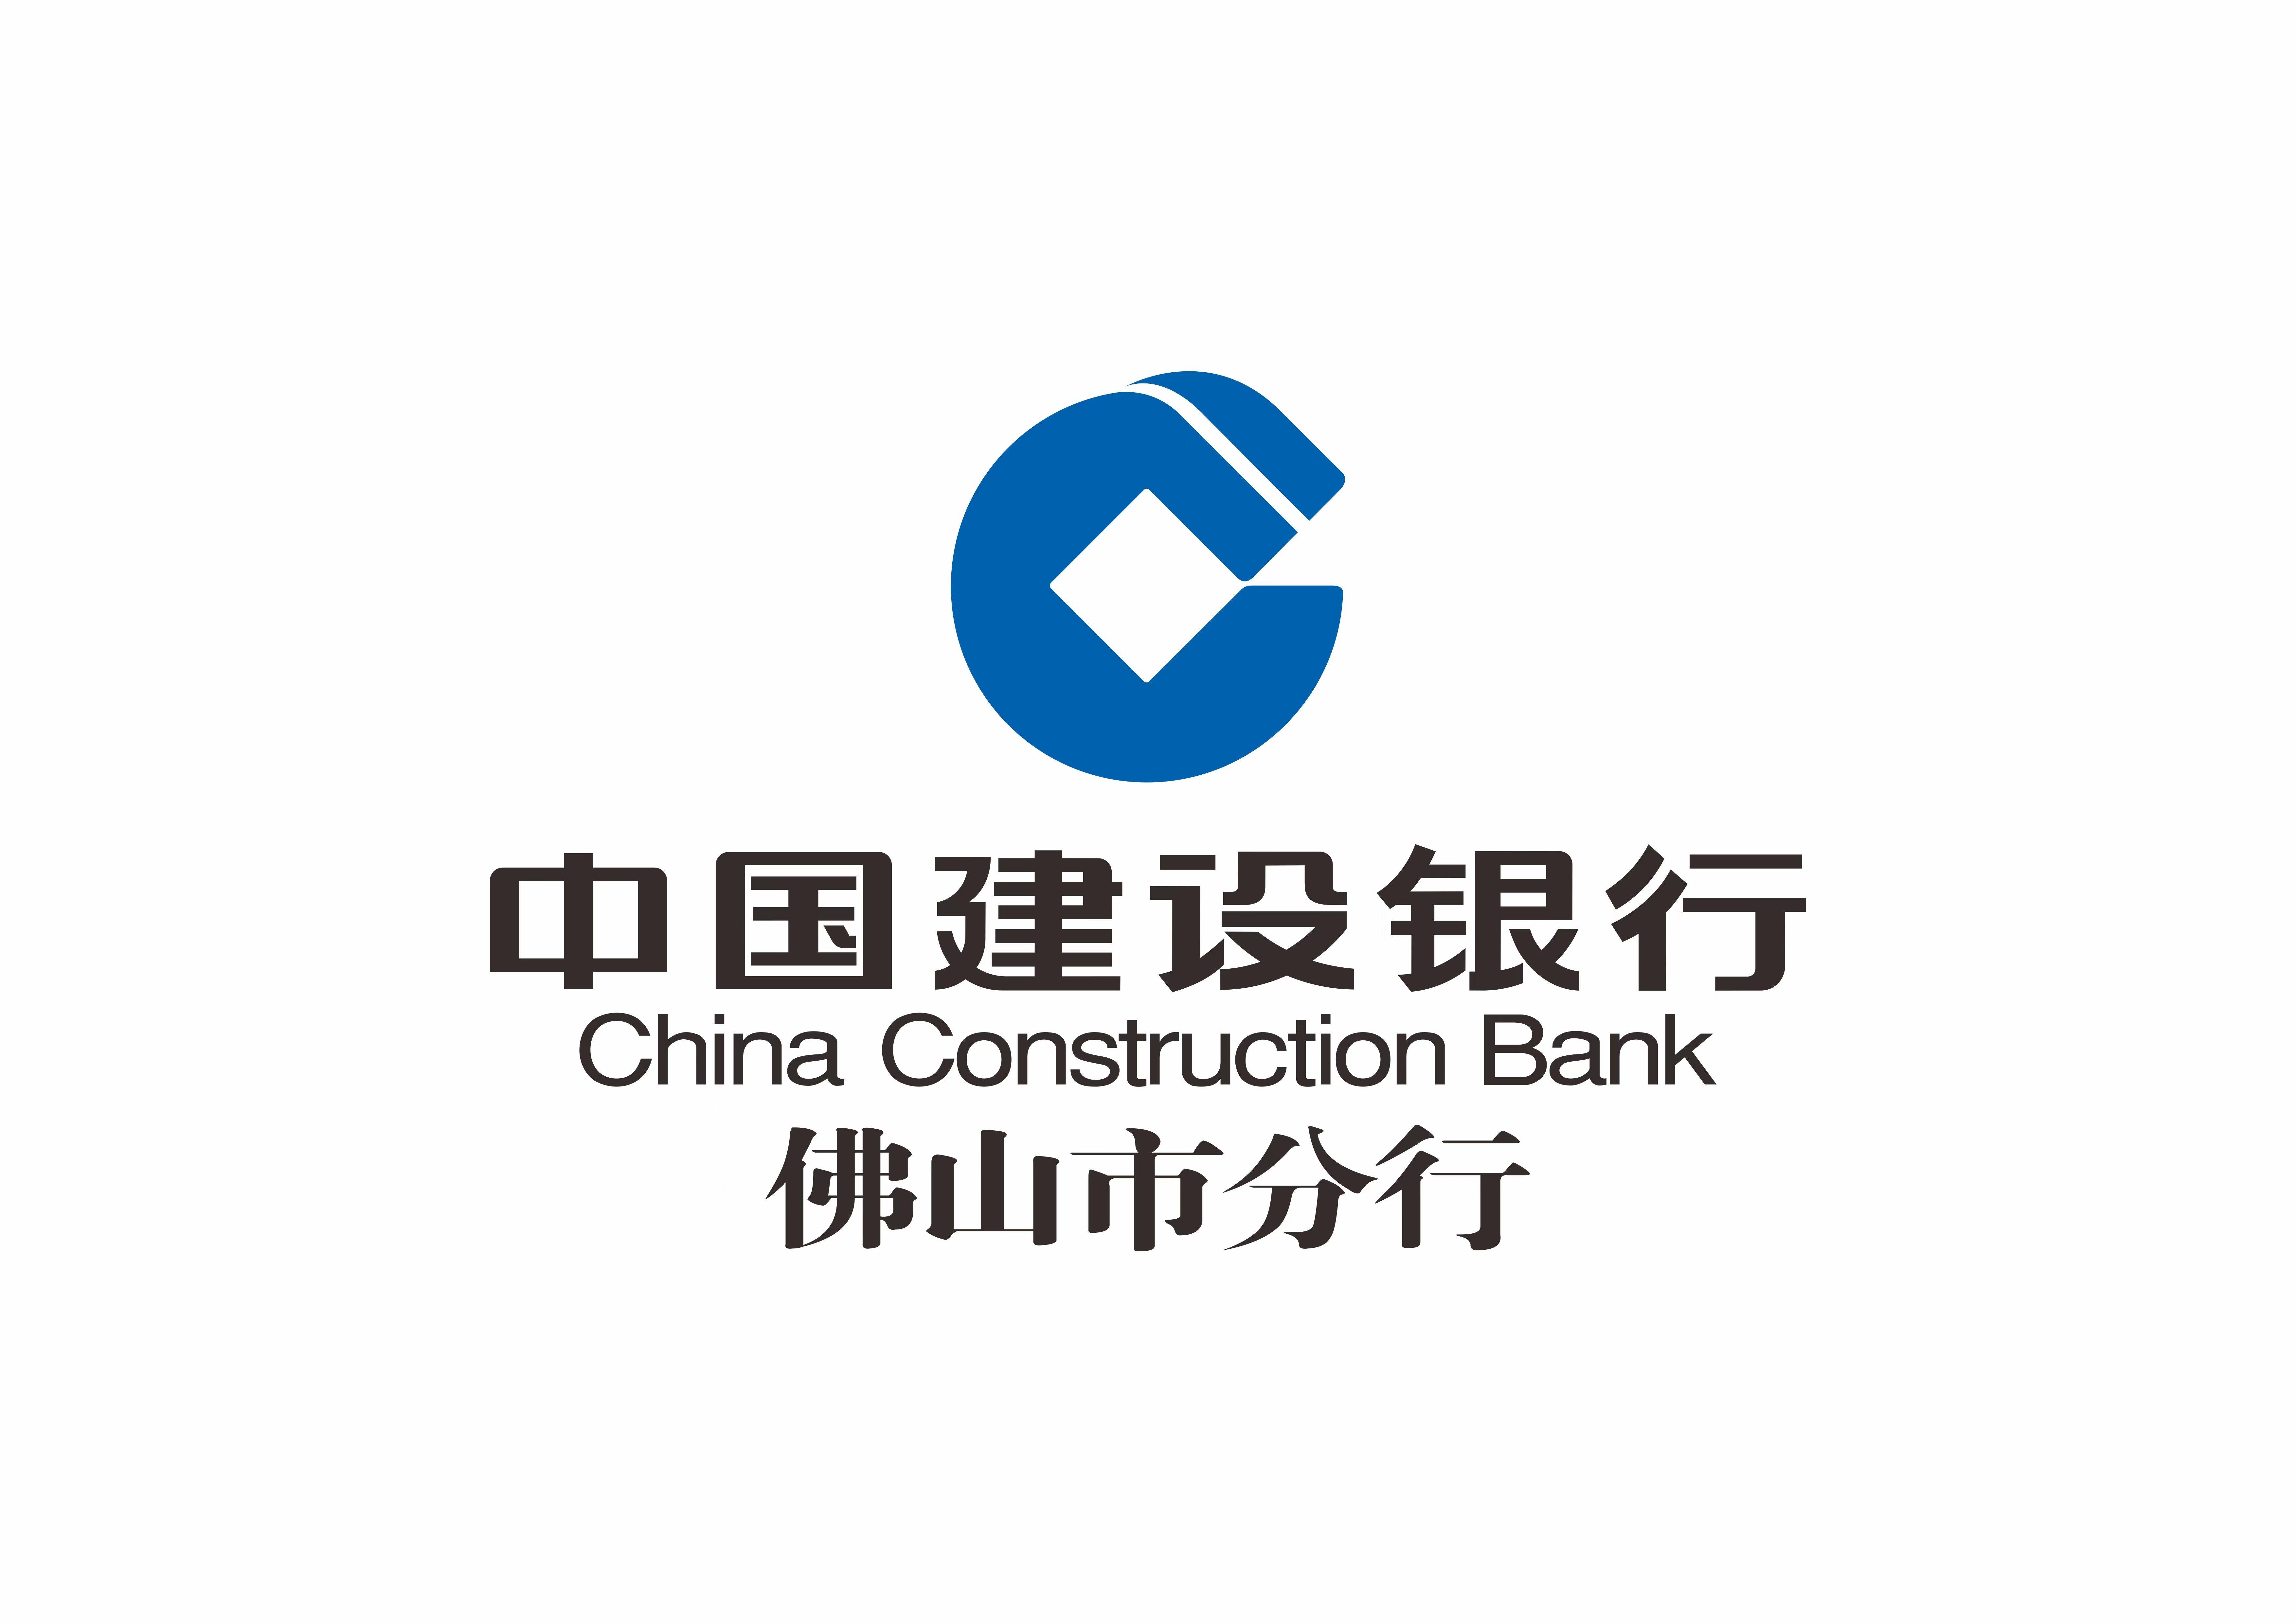 中国建设银行佛山市分行大力推广企业手机银行移动金融产品